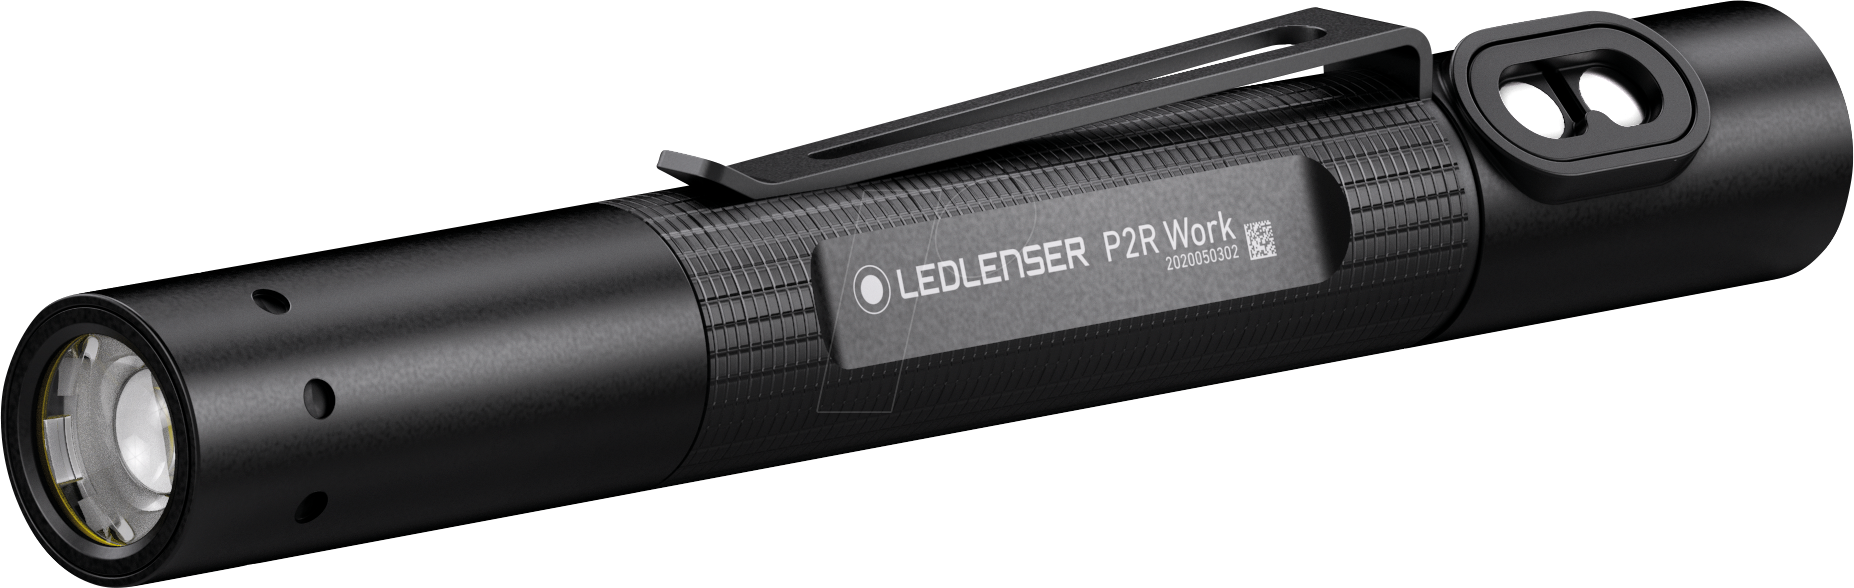 LEDLENSER 502183 - LED-Taschenlampe, P2R Work, 110 lm von LEDLENSER